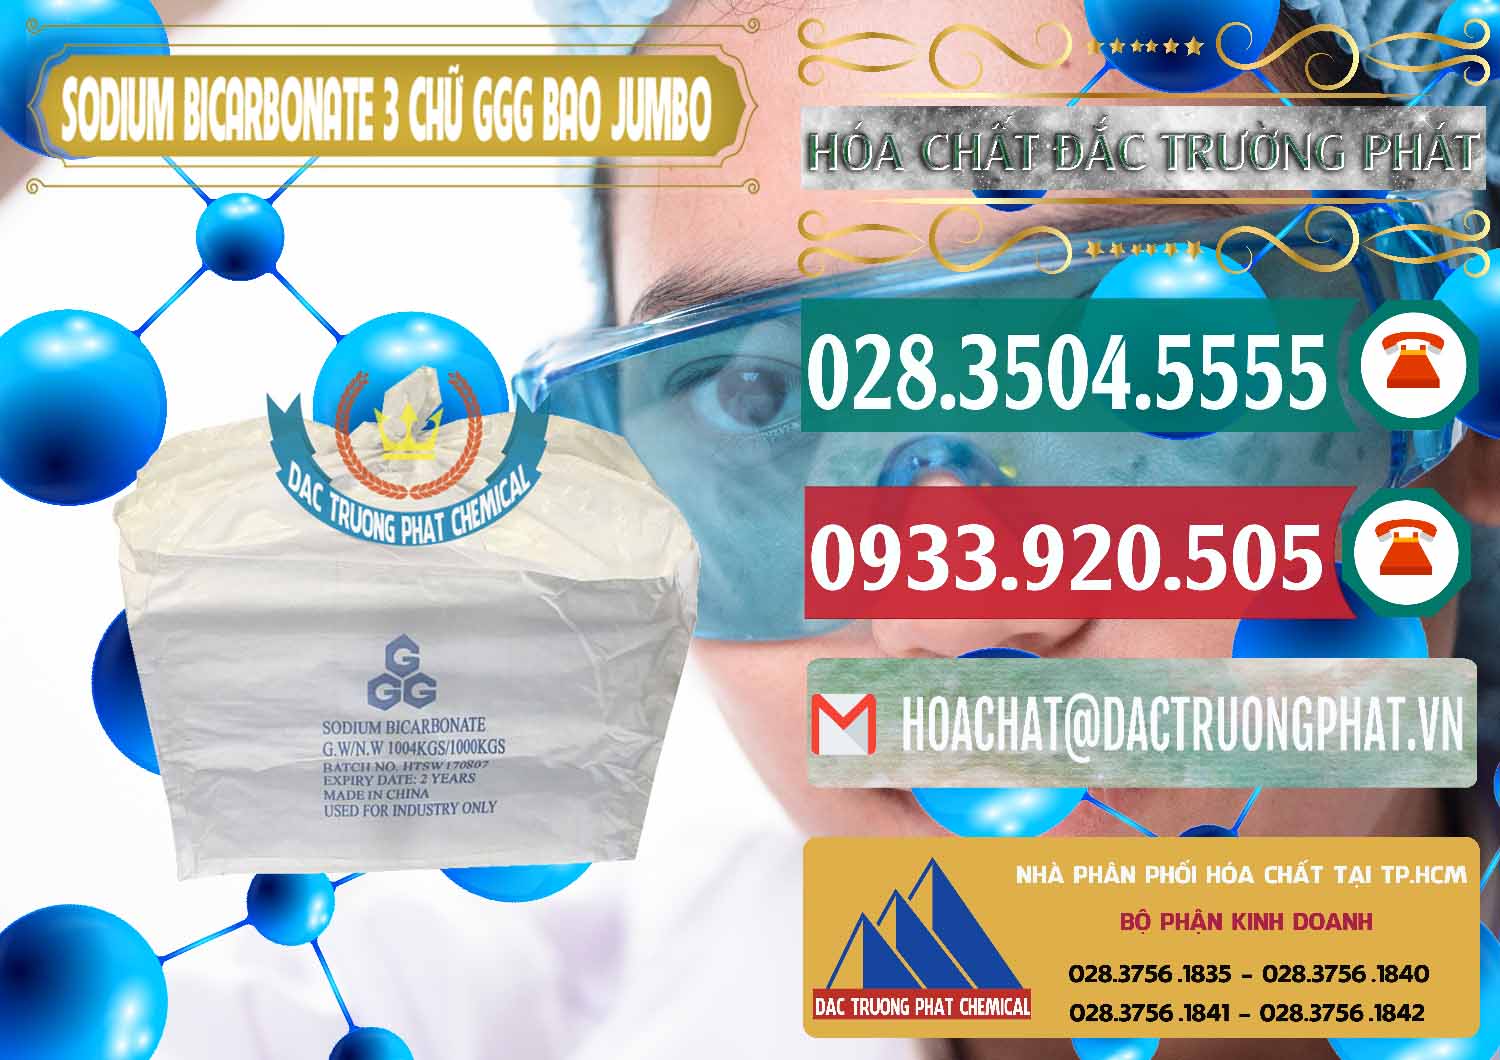 Chuyên bán và cung ứng Sodium Bicarbonate – Bicar NaHCO3 Food Grade 3 Chữ GGG Bao Jumbo ( Bành ) Trung Quốc China - 0260 - Nhà cung cấp & kinh doanh hóa chất tại TP.HCM - muabanhoachat.vn